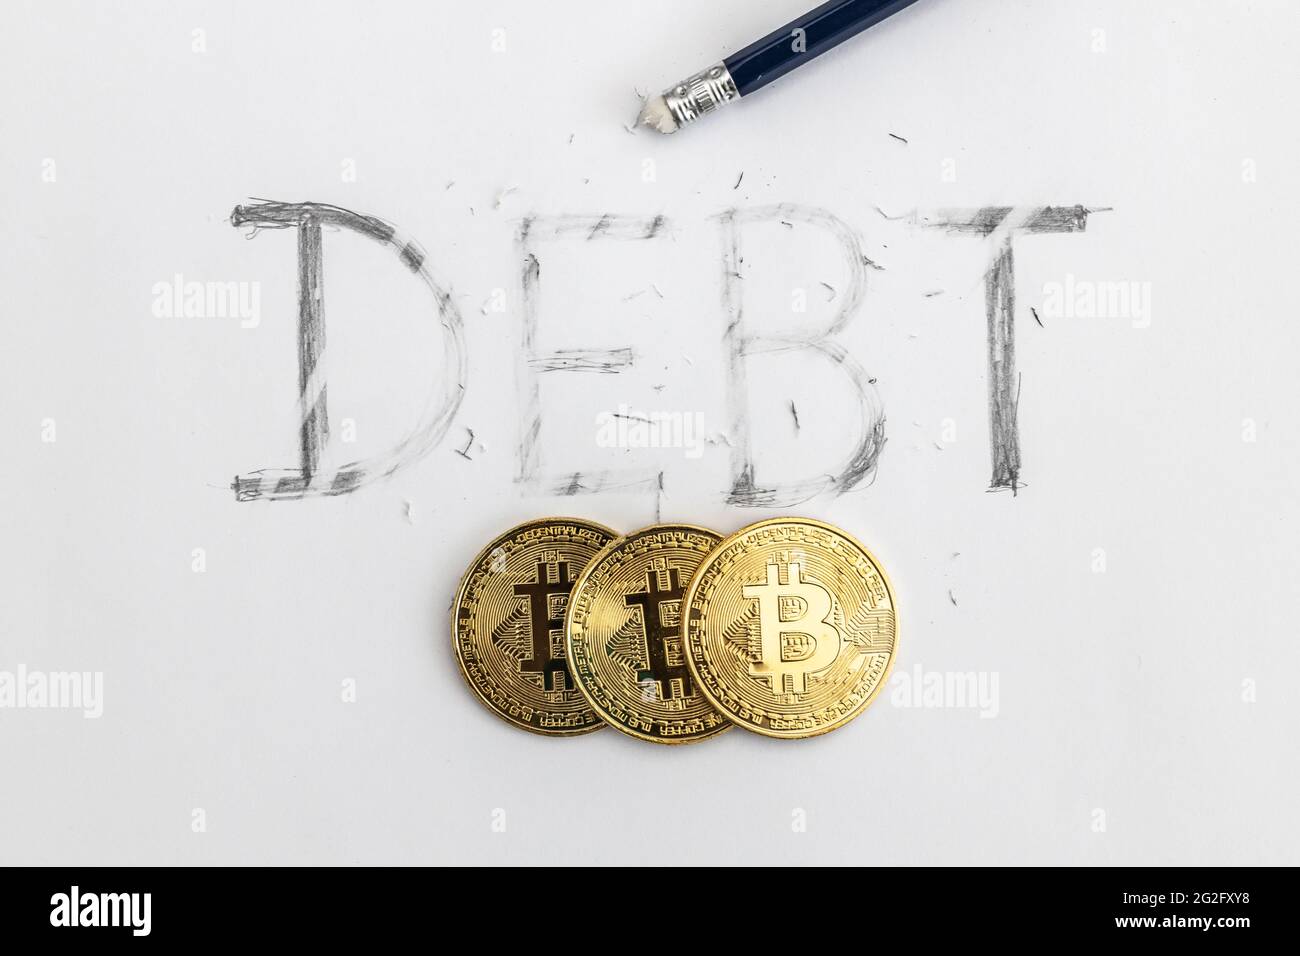 Effacer la dette avec bitcoin. Dette écrite sur papier blanc avec un crayon, partiellement effacée avec une gomme. Symbolique pour effacer la dette. Banque D'Images